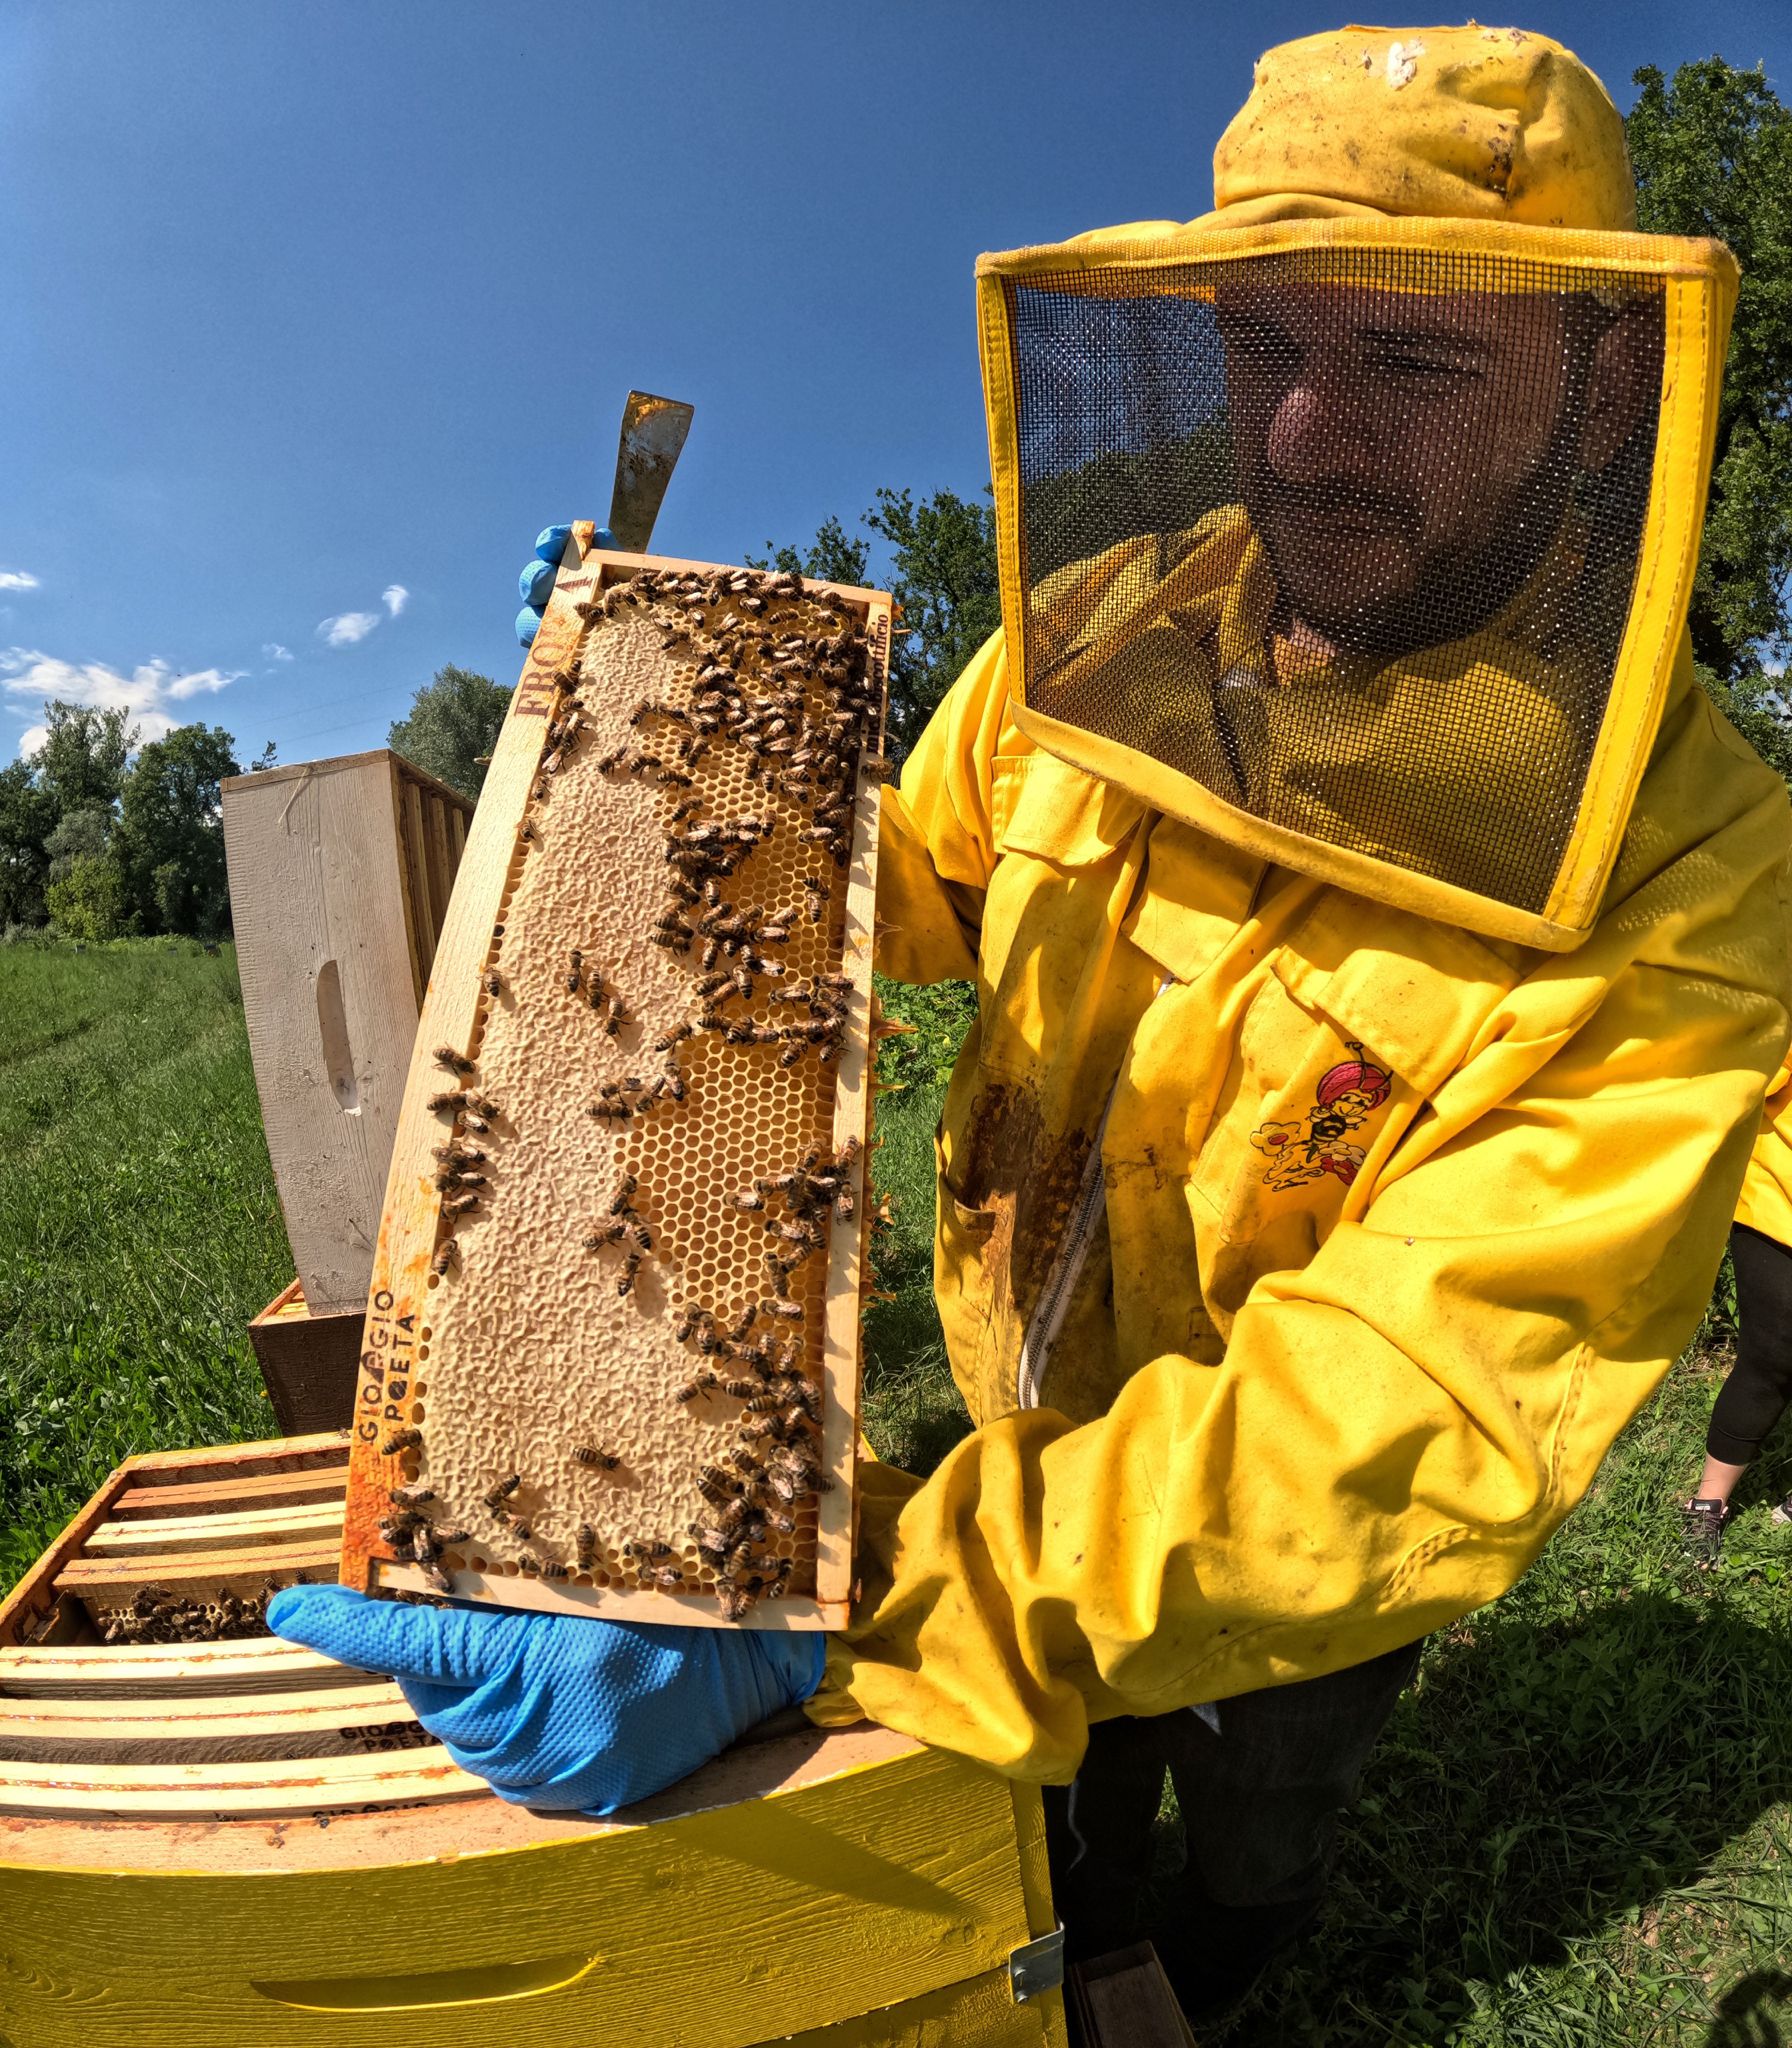 BeeFrolla - Dolci come il miele-Frolla Microbiscottificio